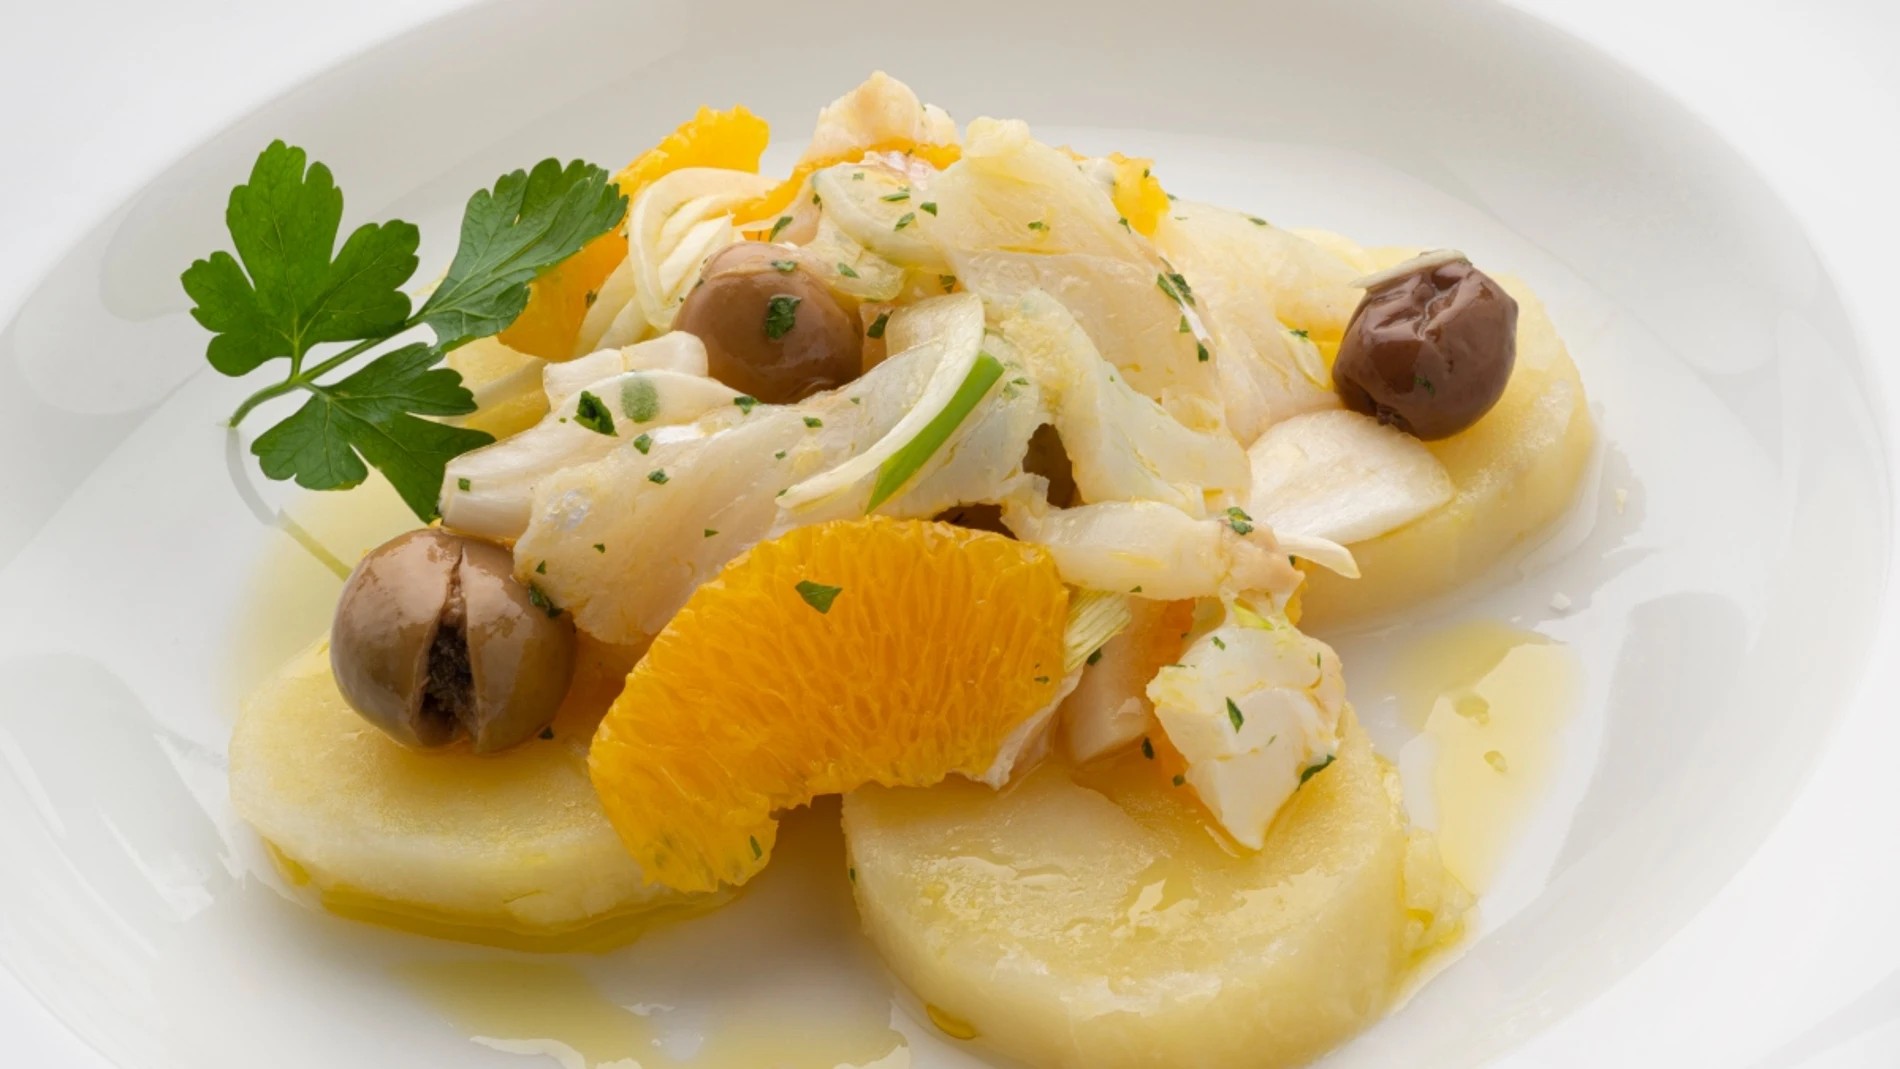 Arguiñano: receta de la famosa ensalada malagueña de patata, bacalao y naranja